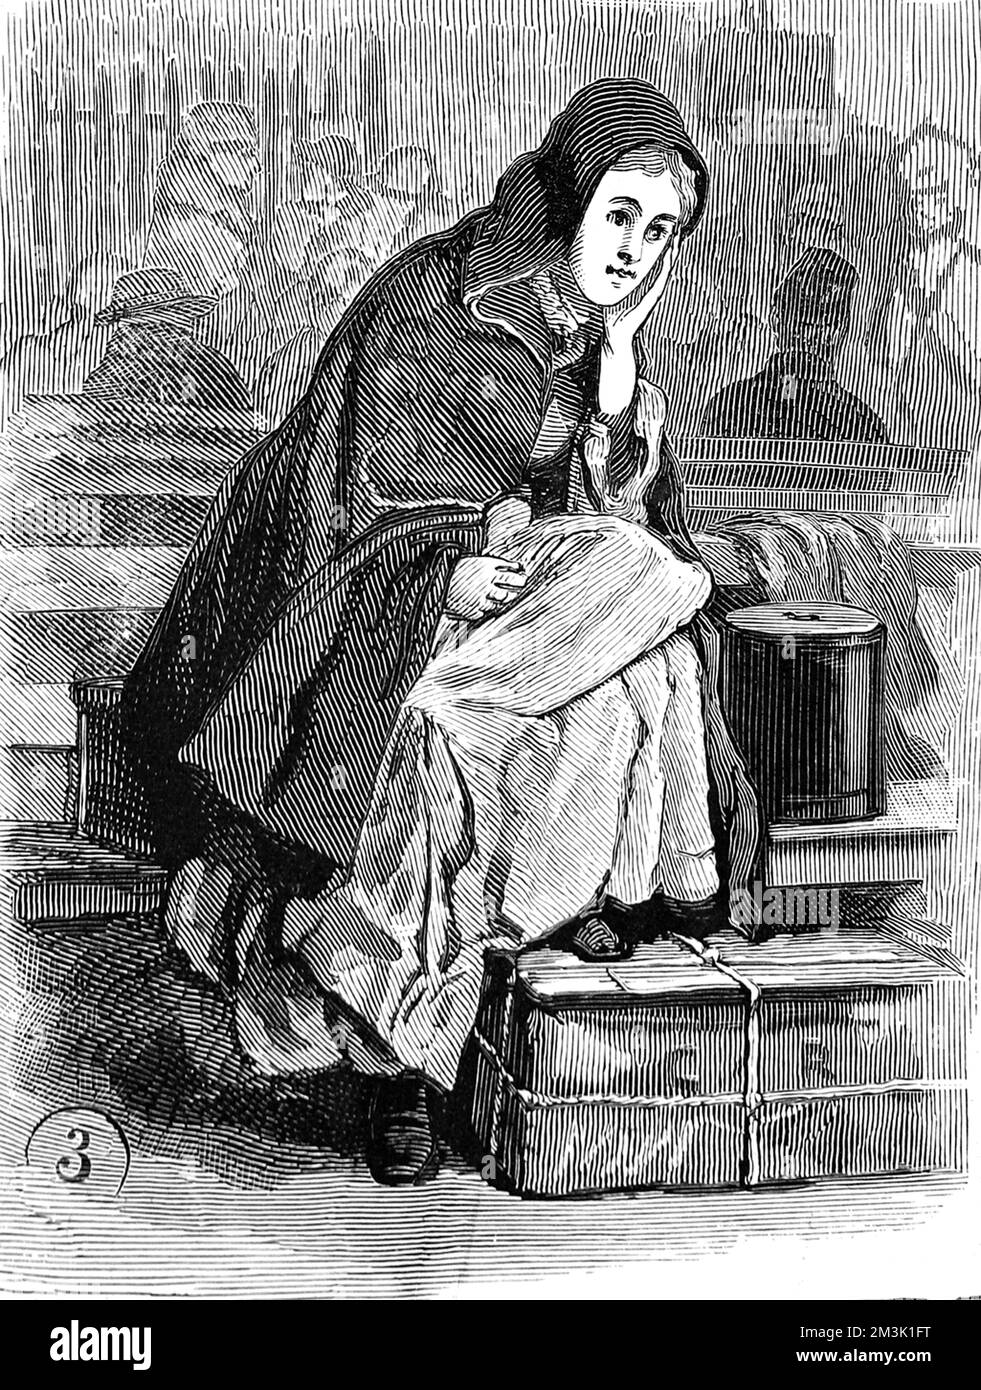 Una joven emigrante espera en el depósito de inmigración de Nueva York por su cuenta. Con sus pies en su caja y envuelta en una capa, ella está mirando con astucia la distancia. Fecha: 1886 Foto de stock